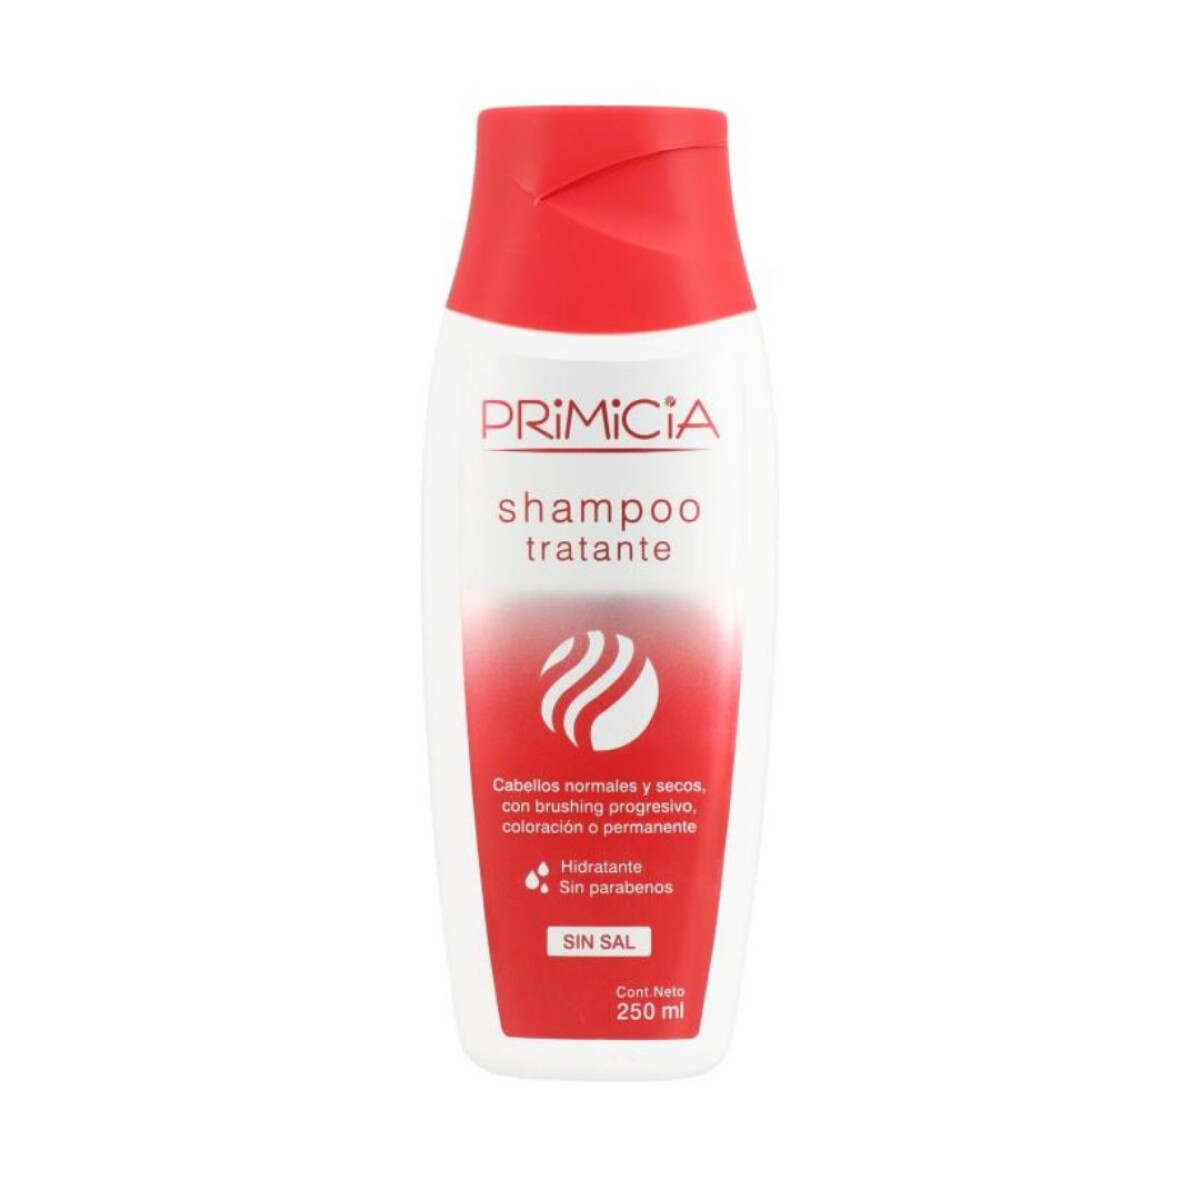 Primicia Shampoo 250ml - Tratante 